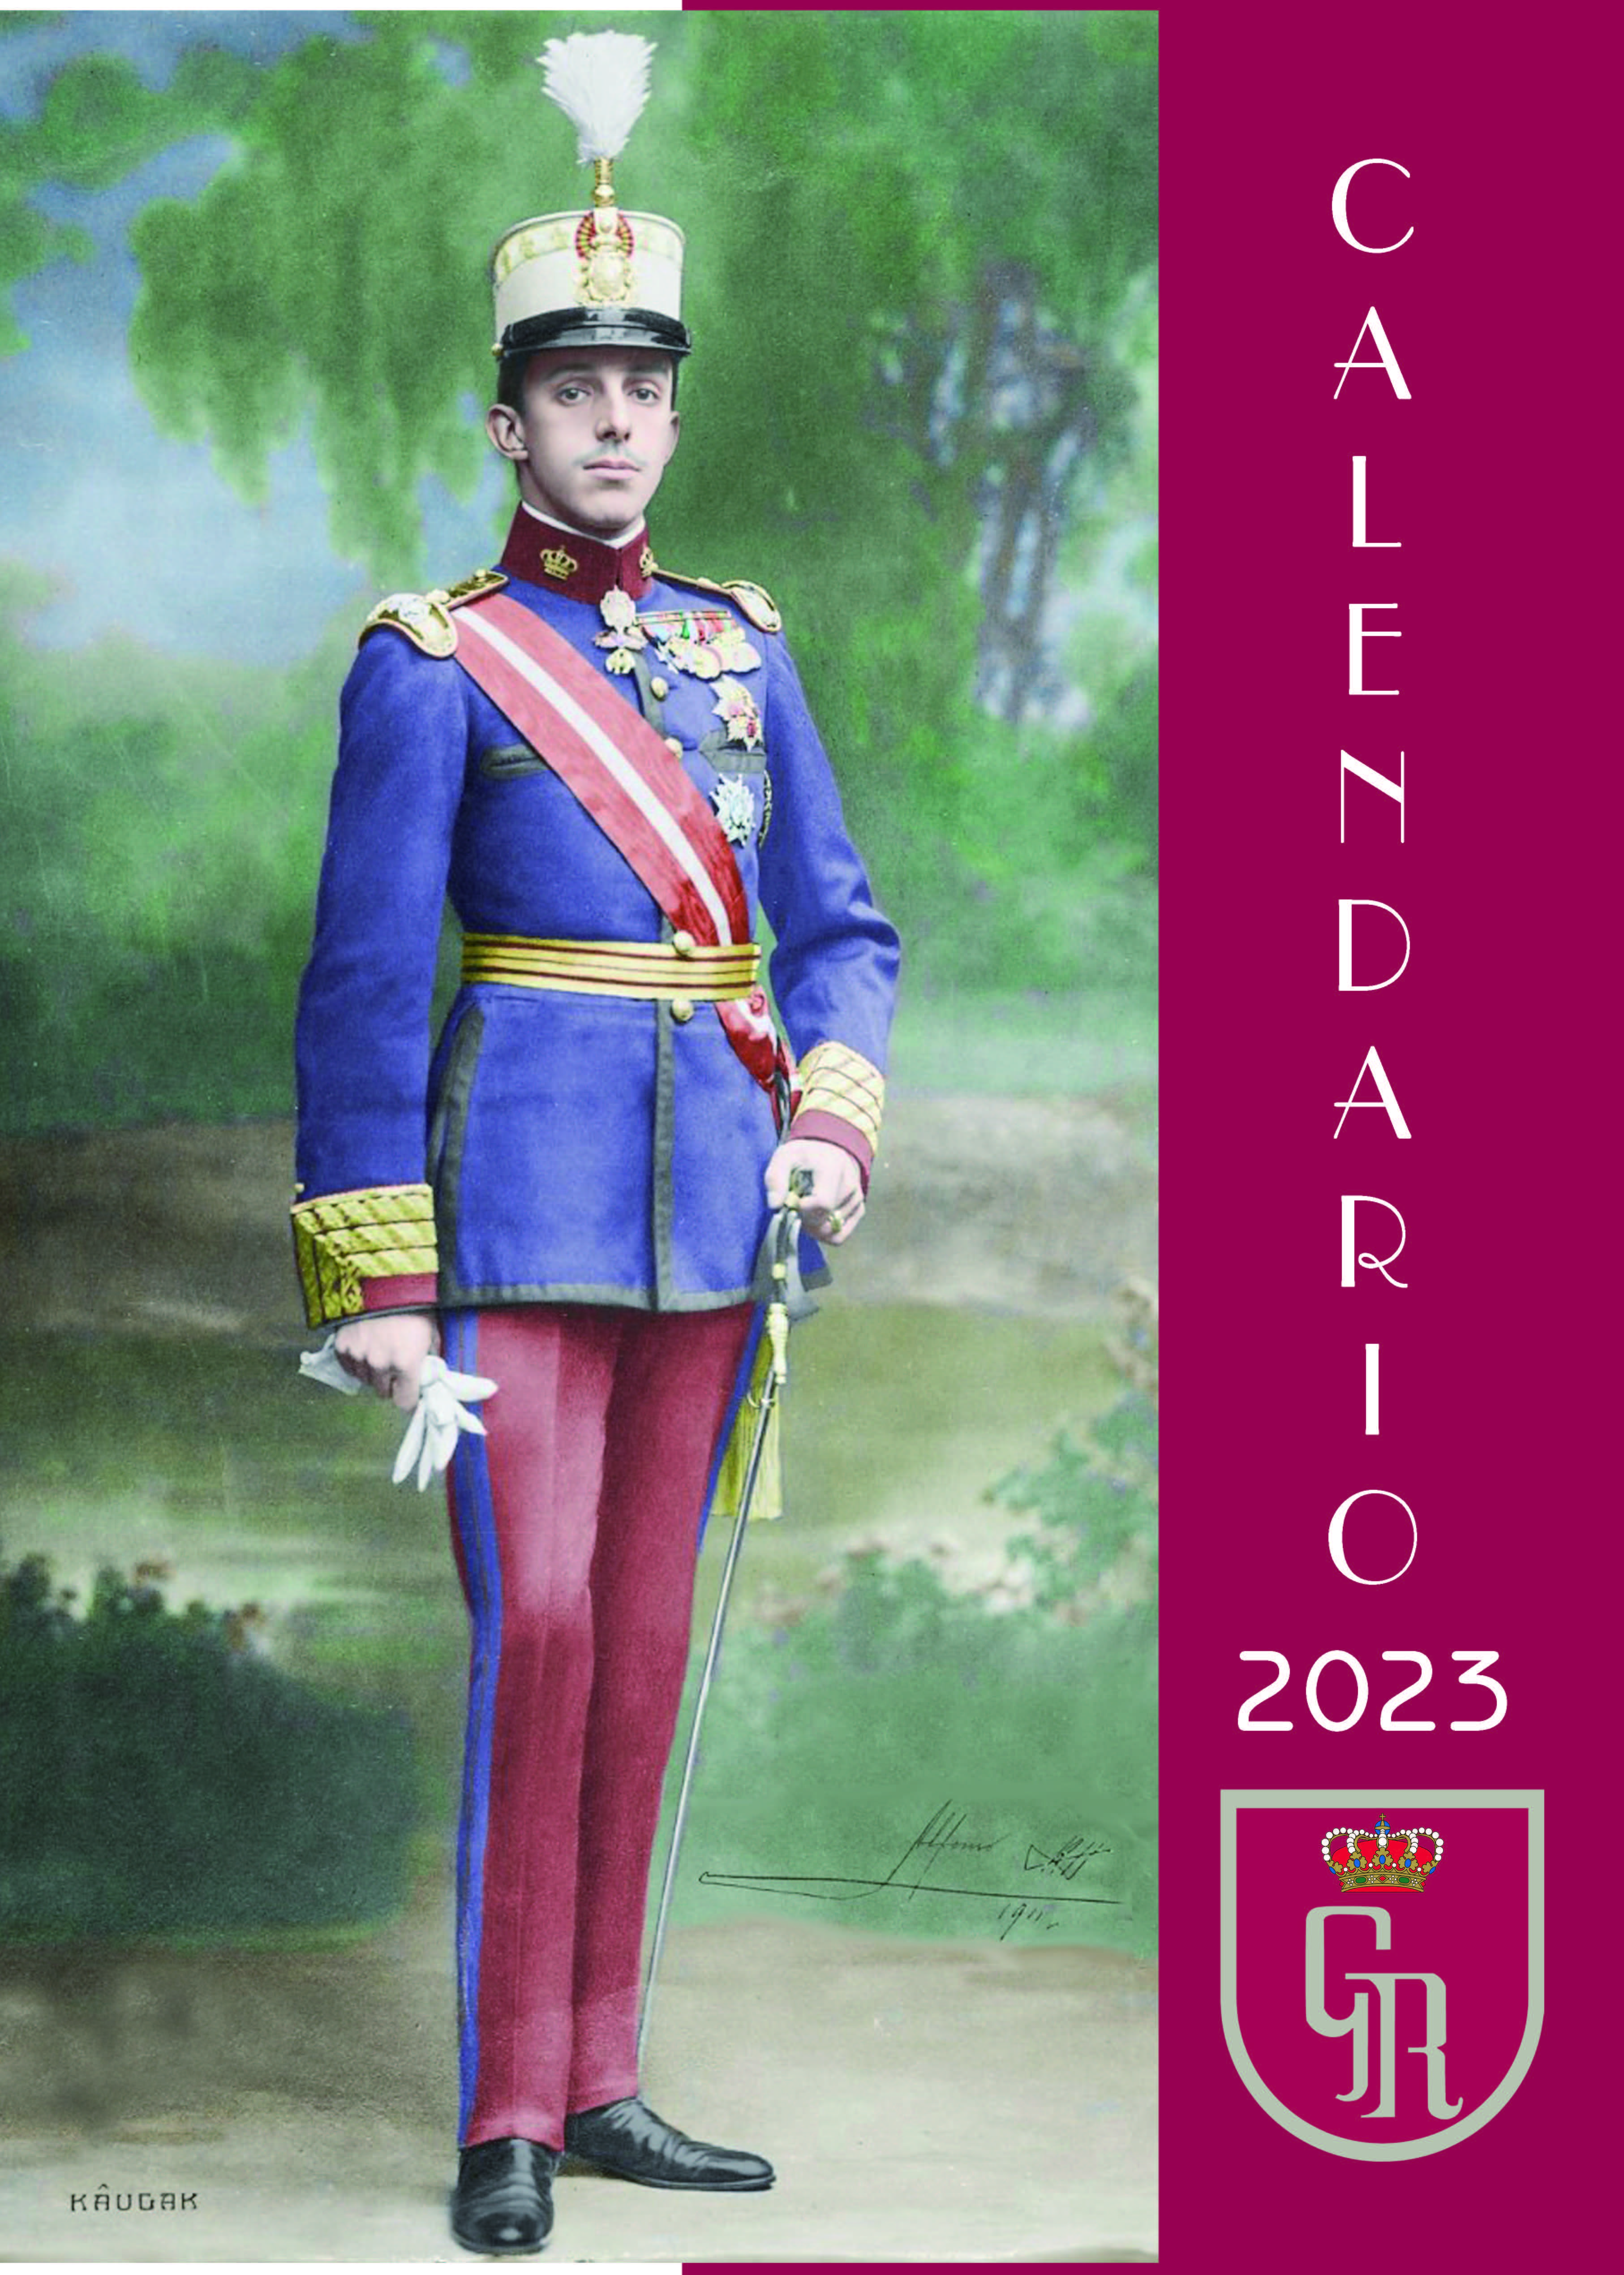 2023 Calendario de la Guardia Real (pared)